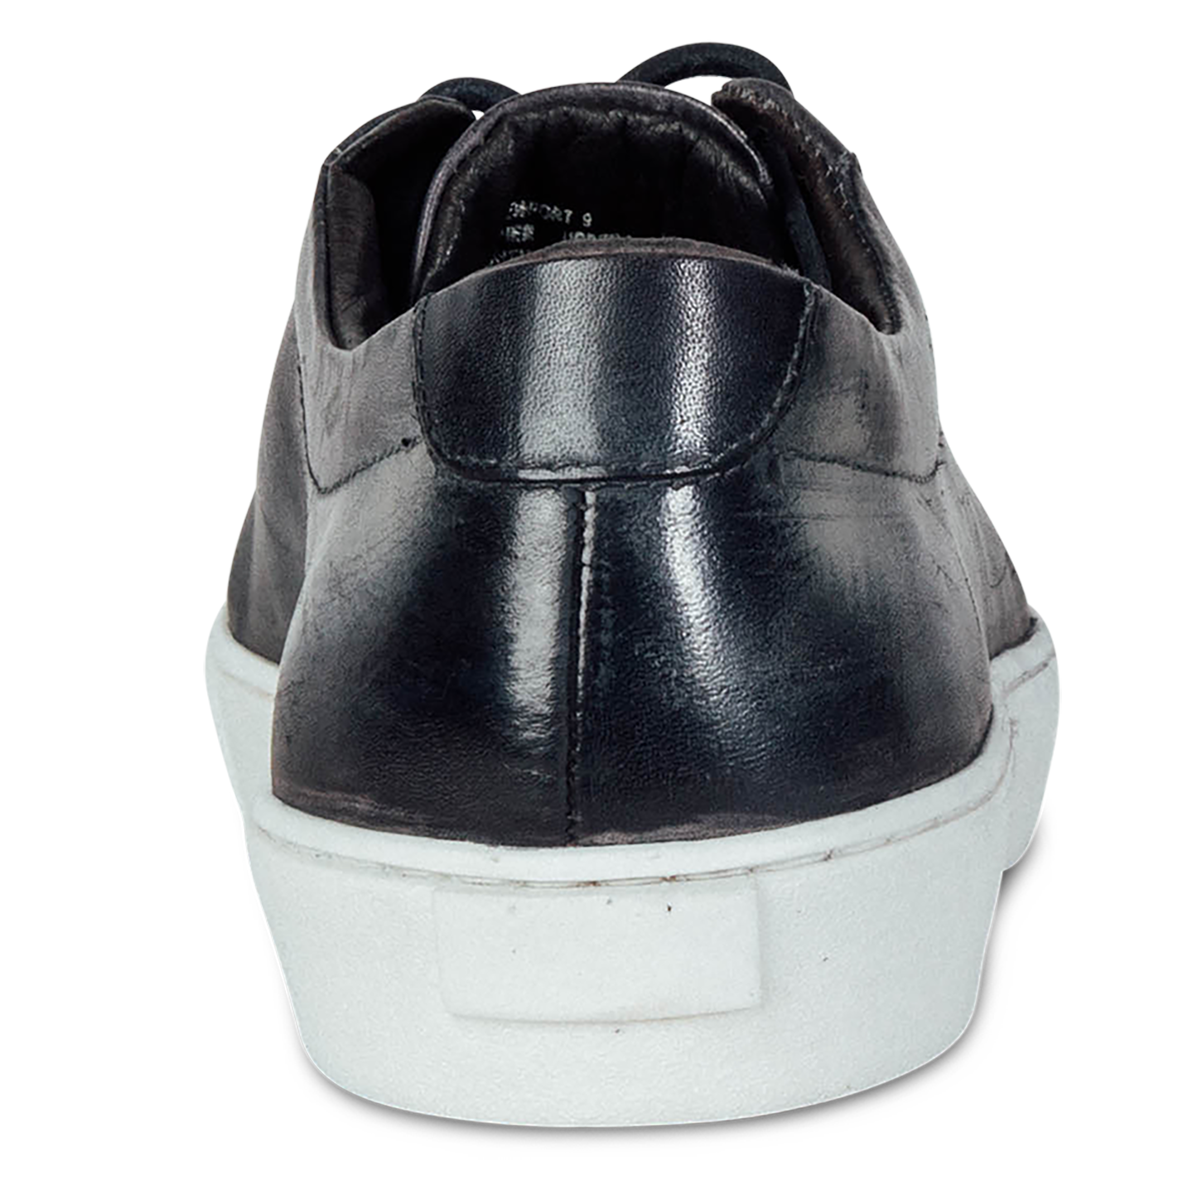 Back view showing heel of FREEBIRD men's Newport black leather sneaker